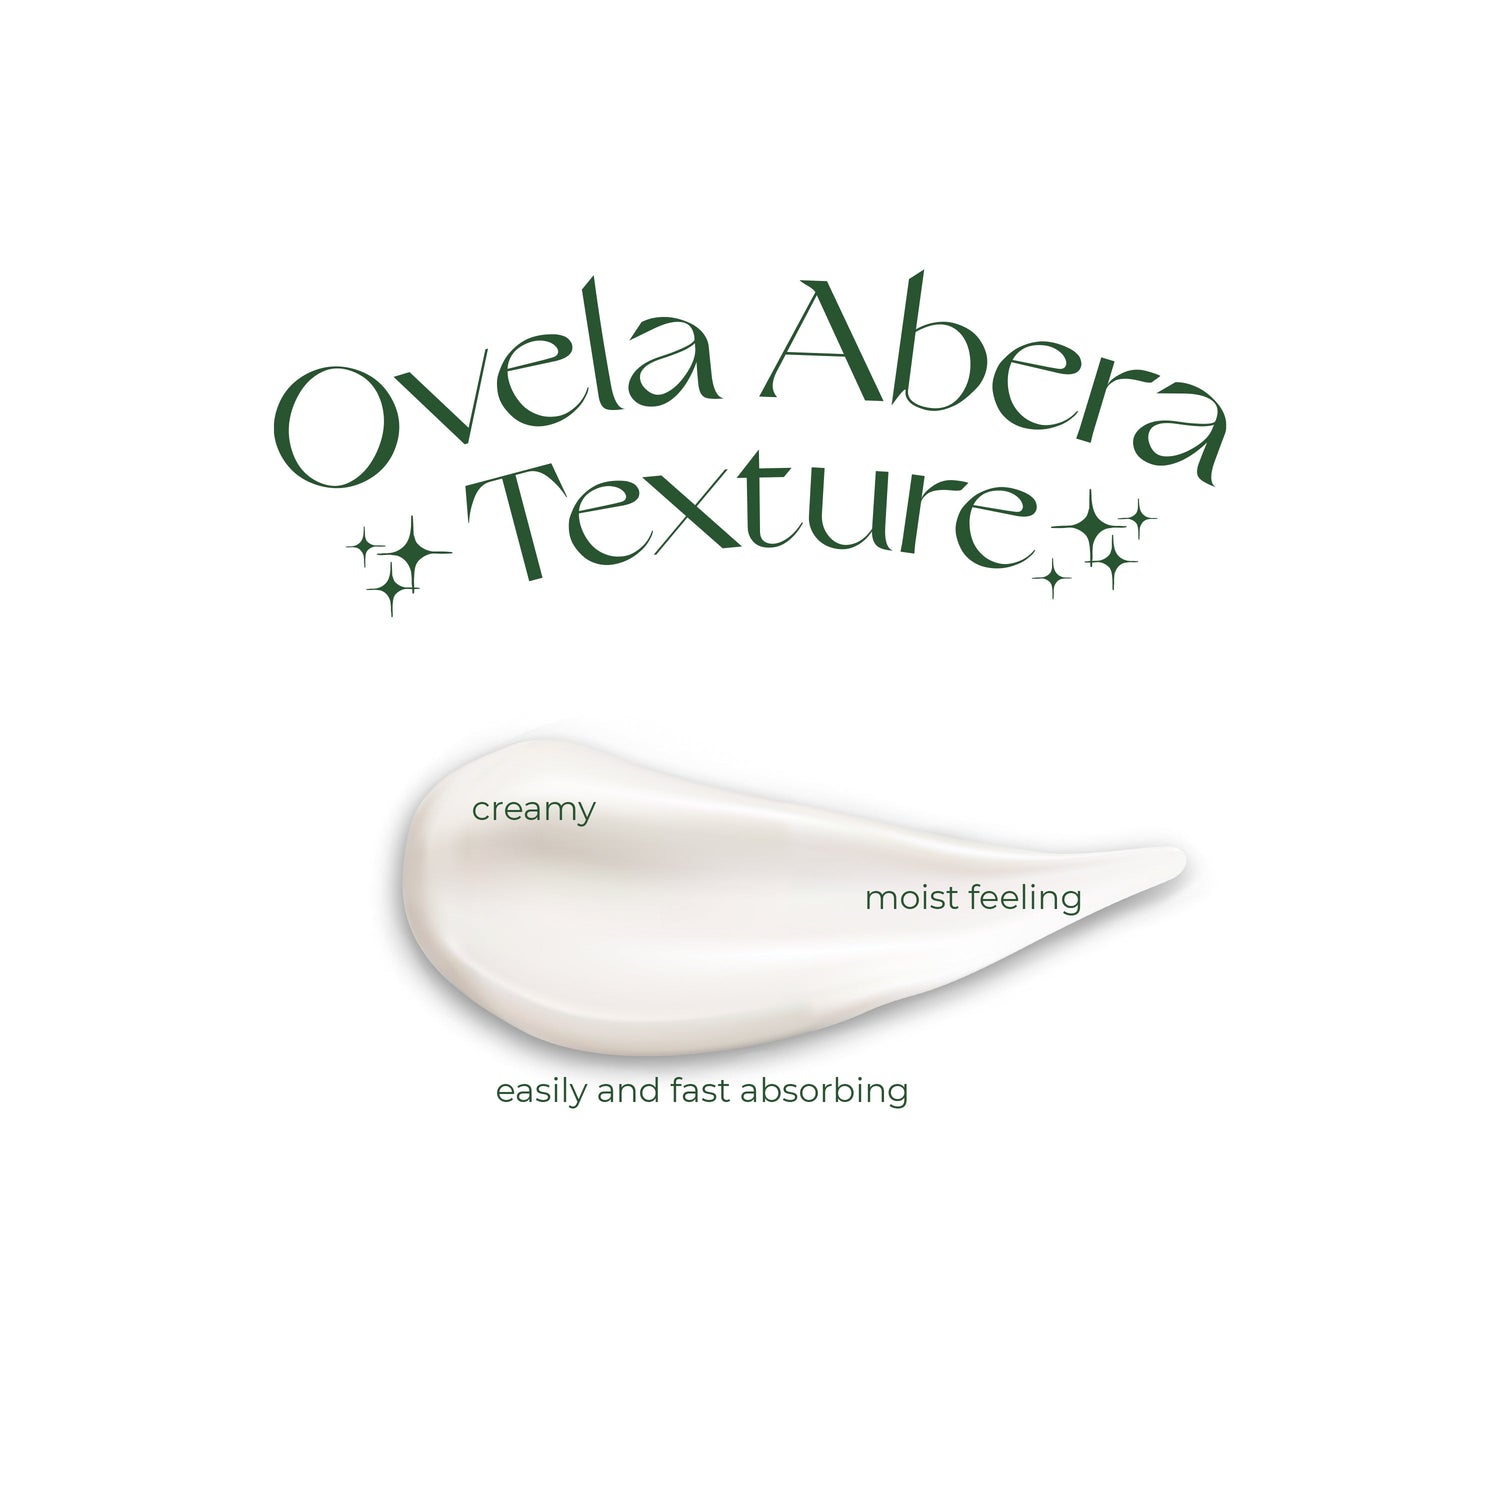 SUPER SALE 50% Stretch Mark Cream Ovela Abera - CS